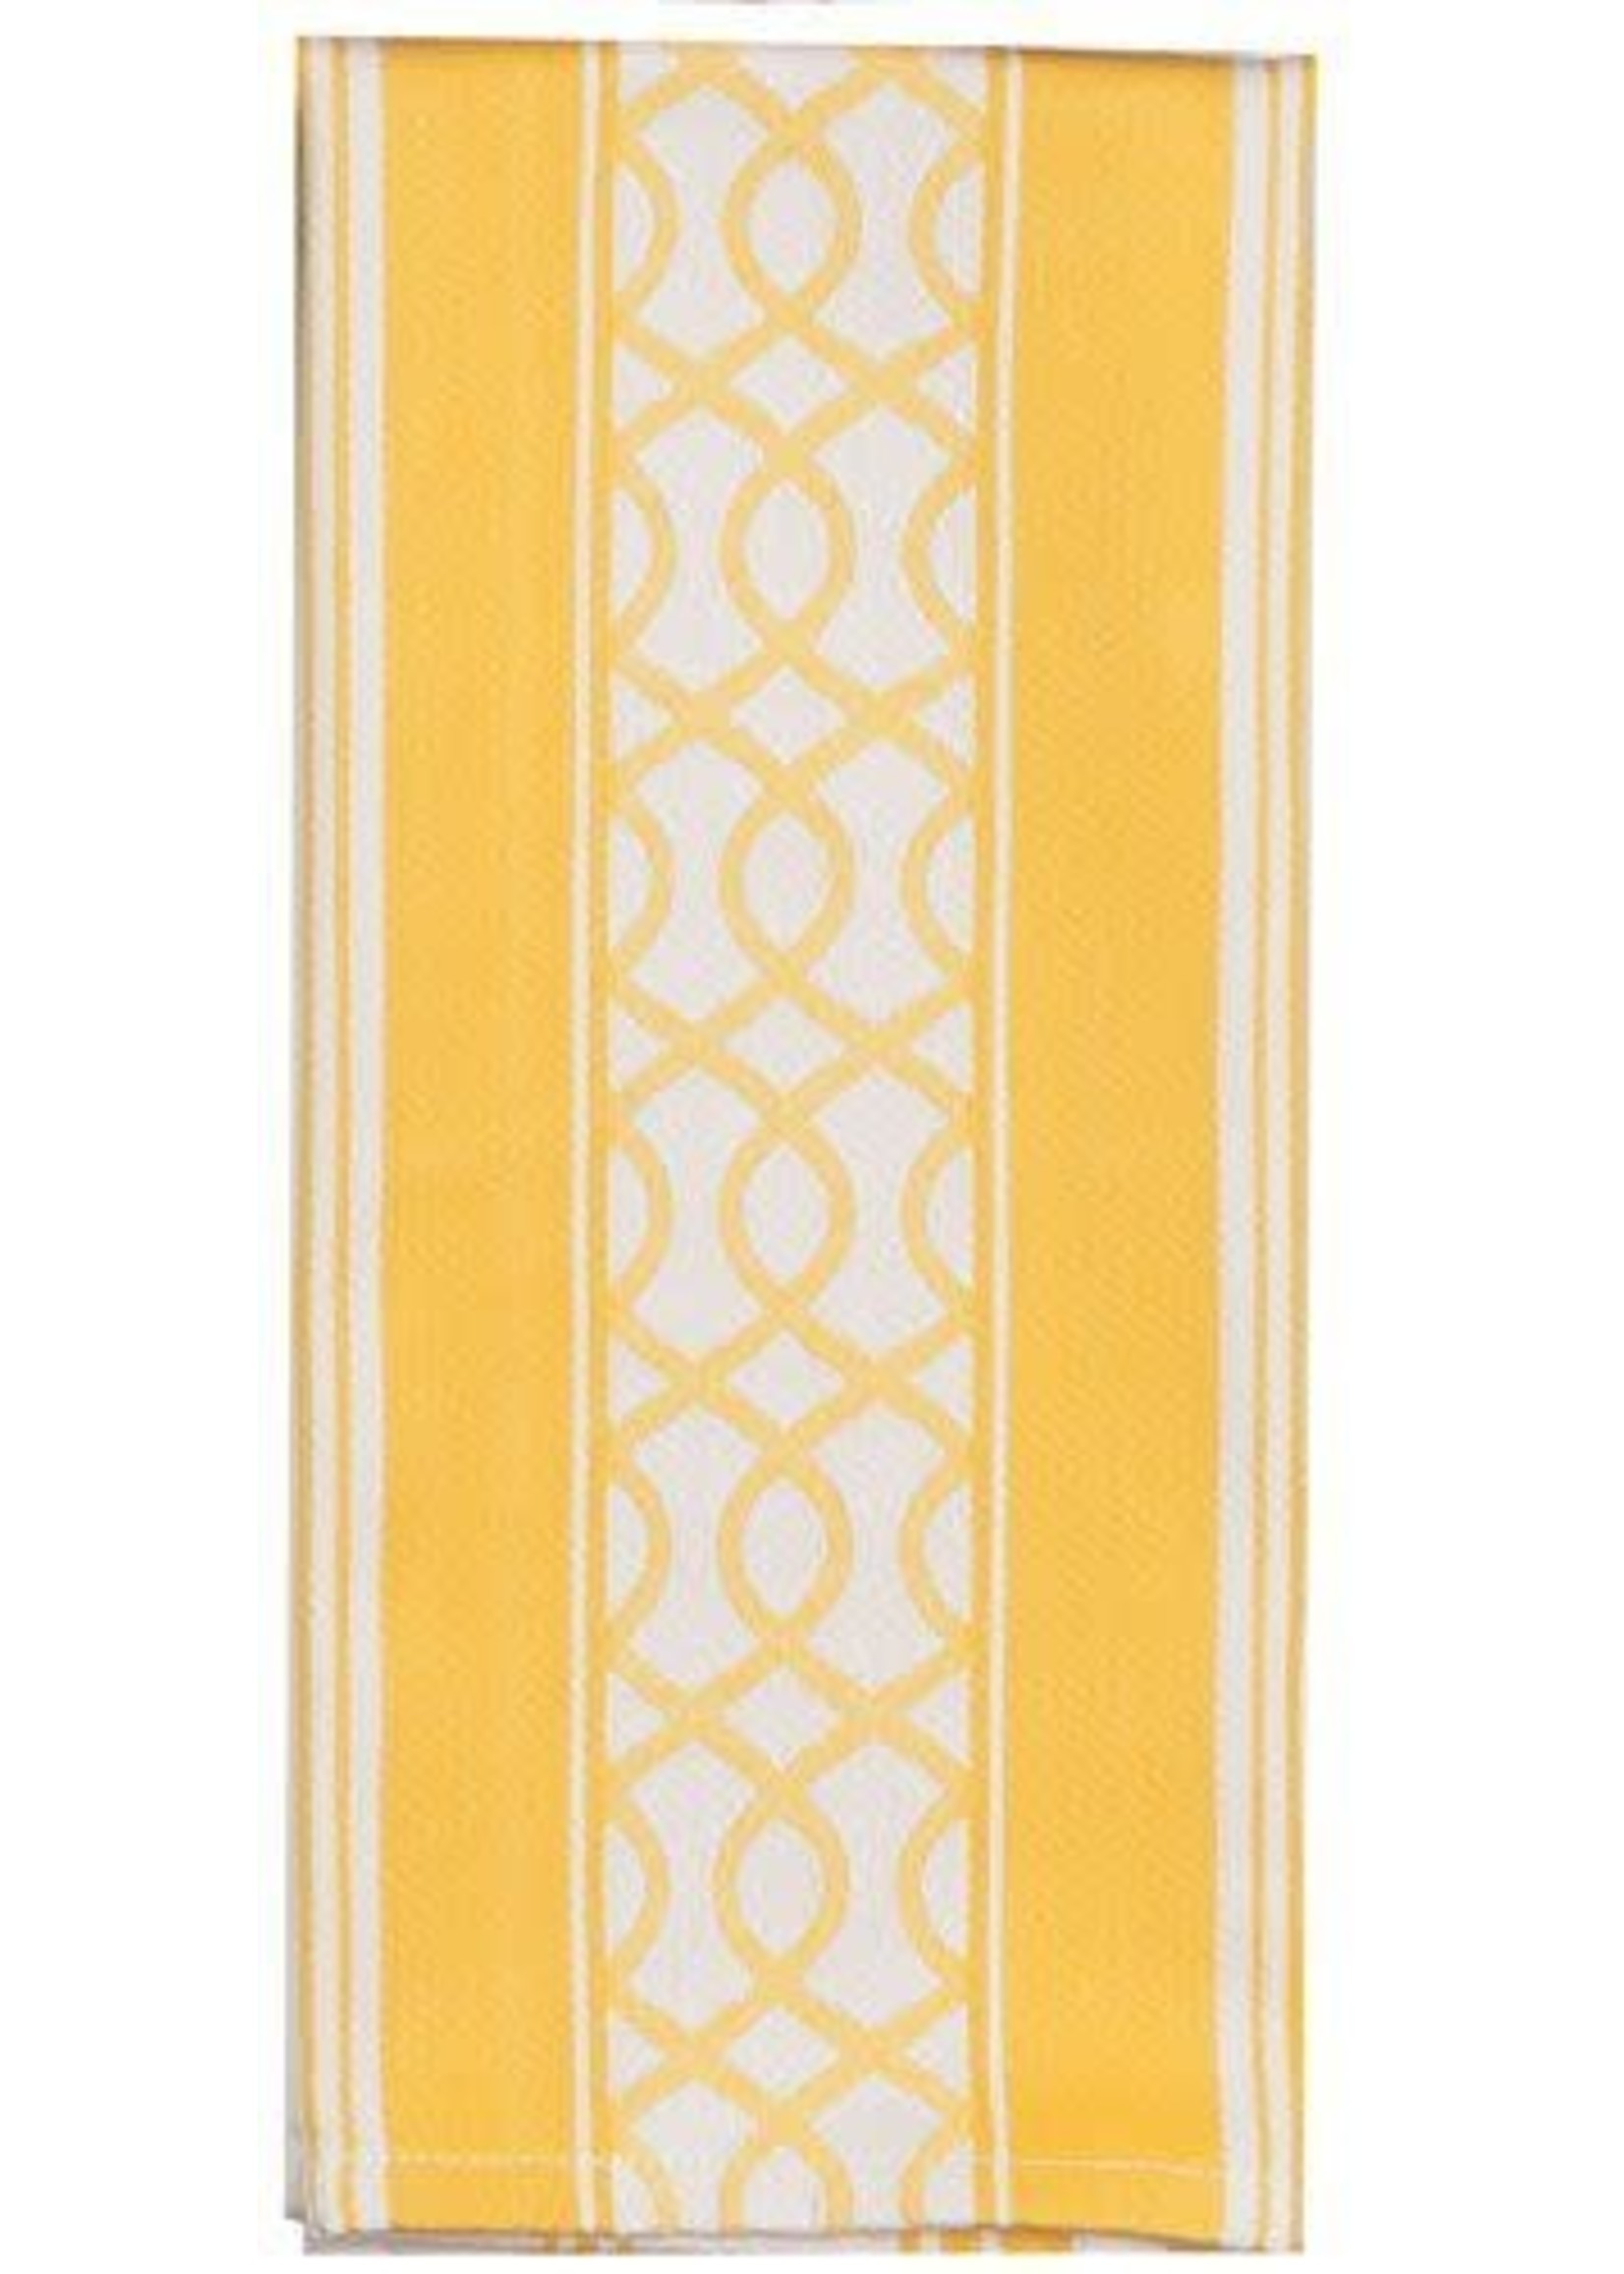 Kay Dee Designs Yellow Rose Jacquard Tea Towel